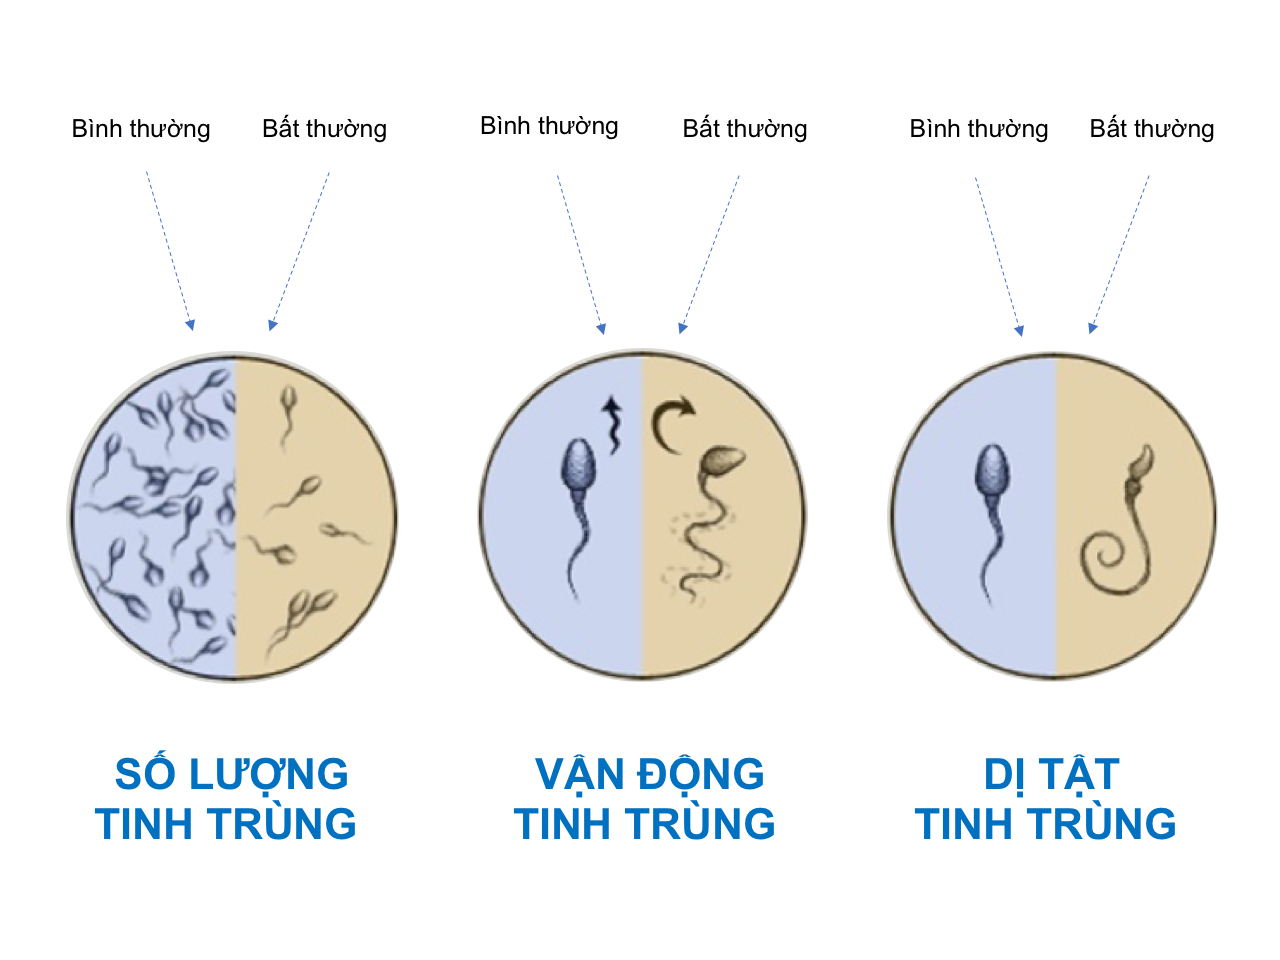 Chất lượng tinh trùng người Việt ngày càng giảm, tinh trùng loãng và bất thường?